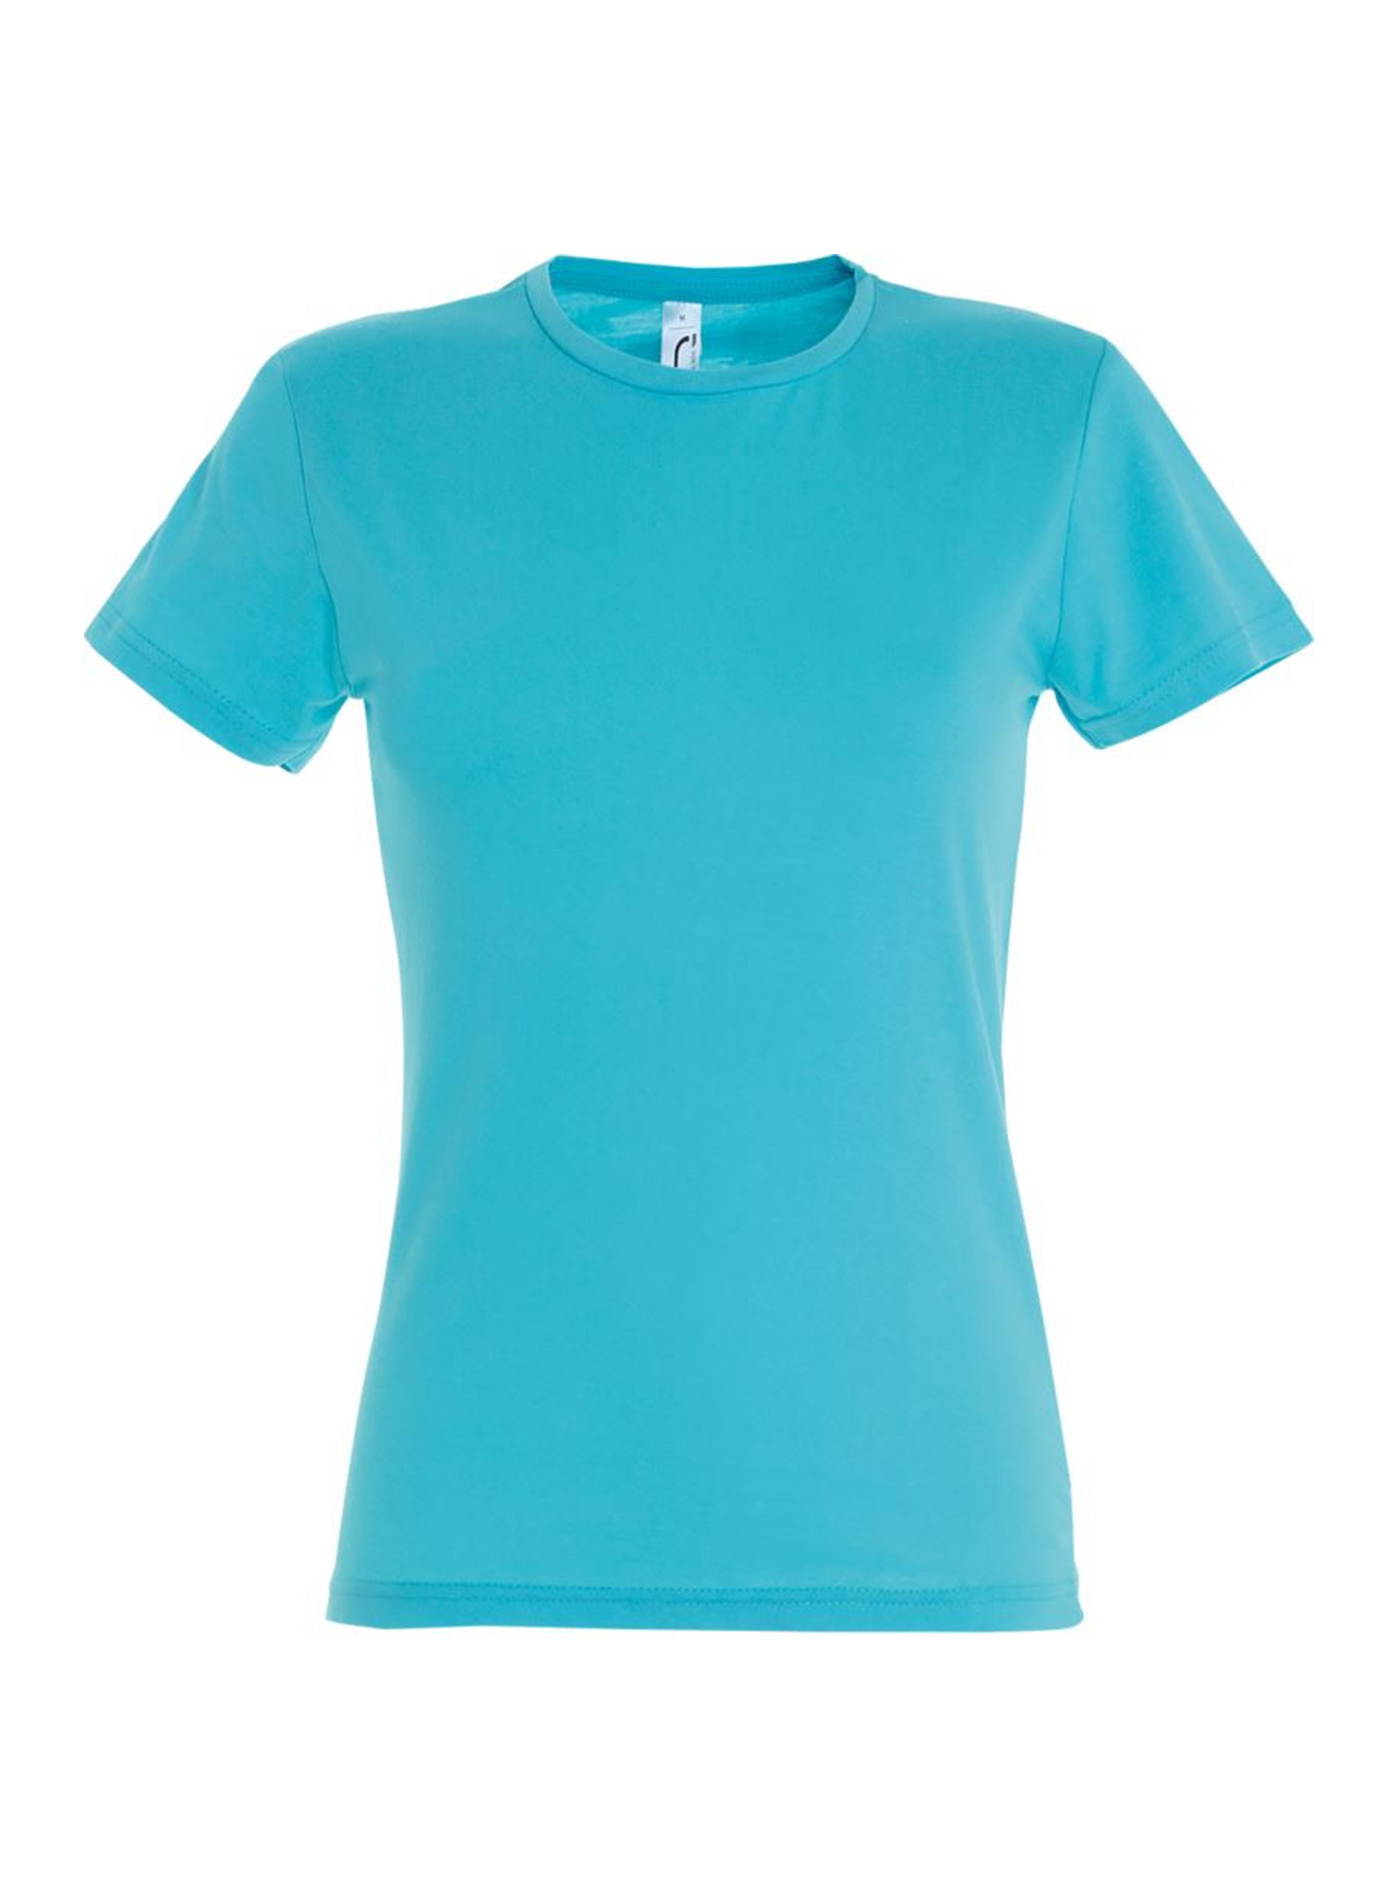 Dámské tričko SOL'S Miss - Azurově modrá žíhaná S